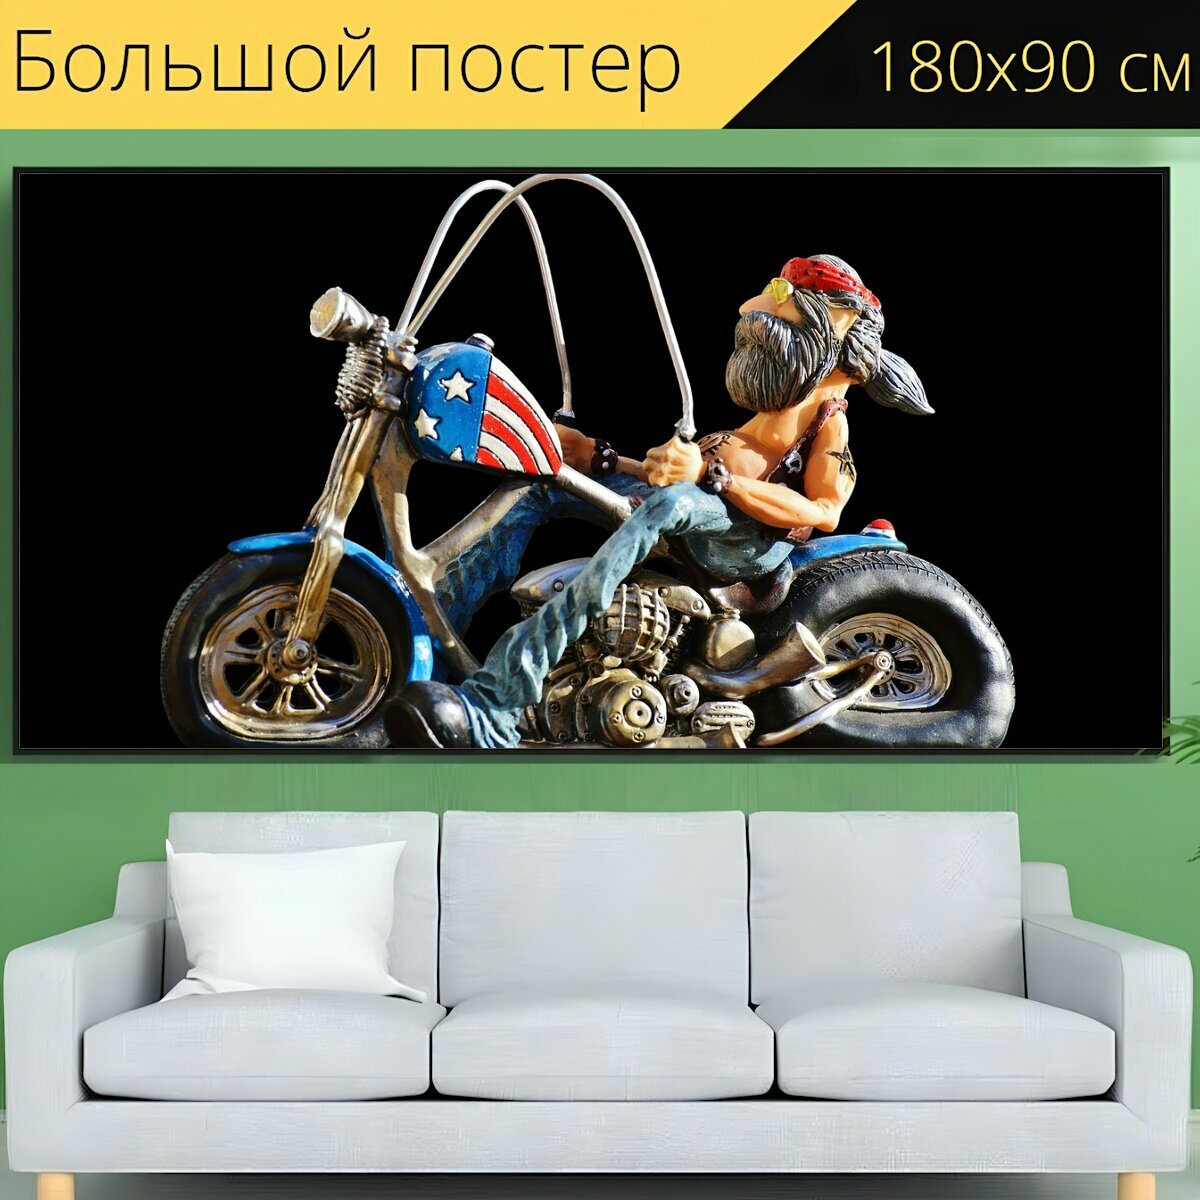 Большой постер "Байкер, велосипед, татуированный" 180 x 90 см. для интерьера